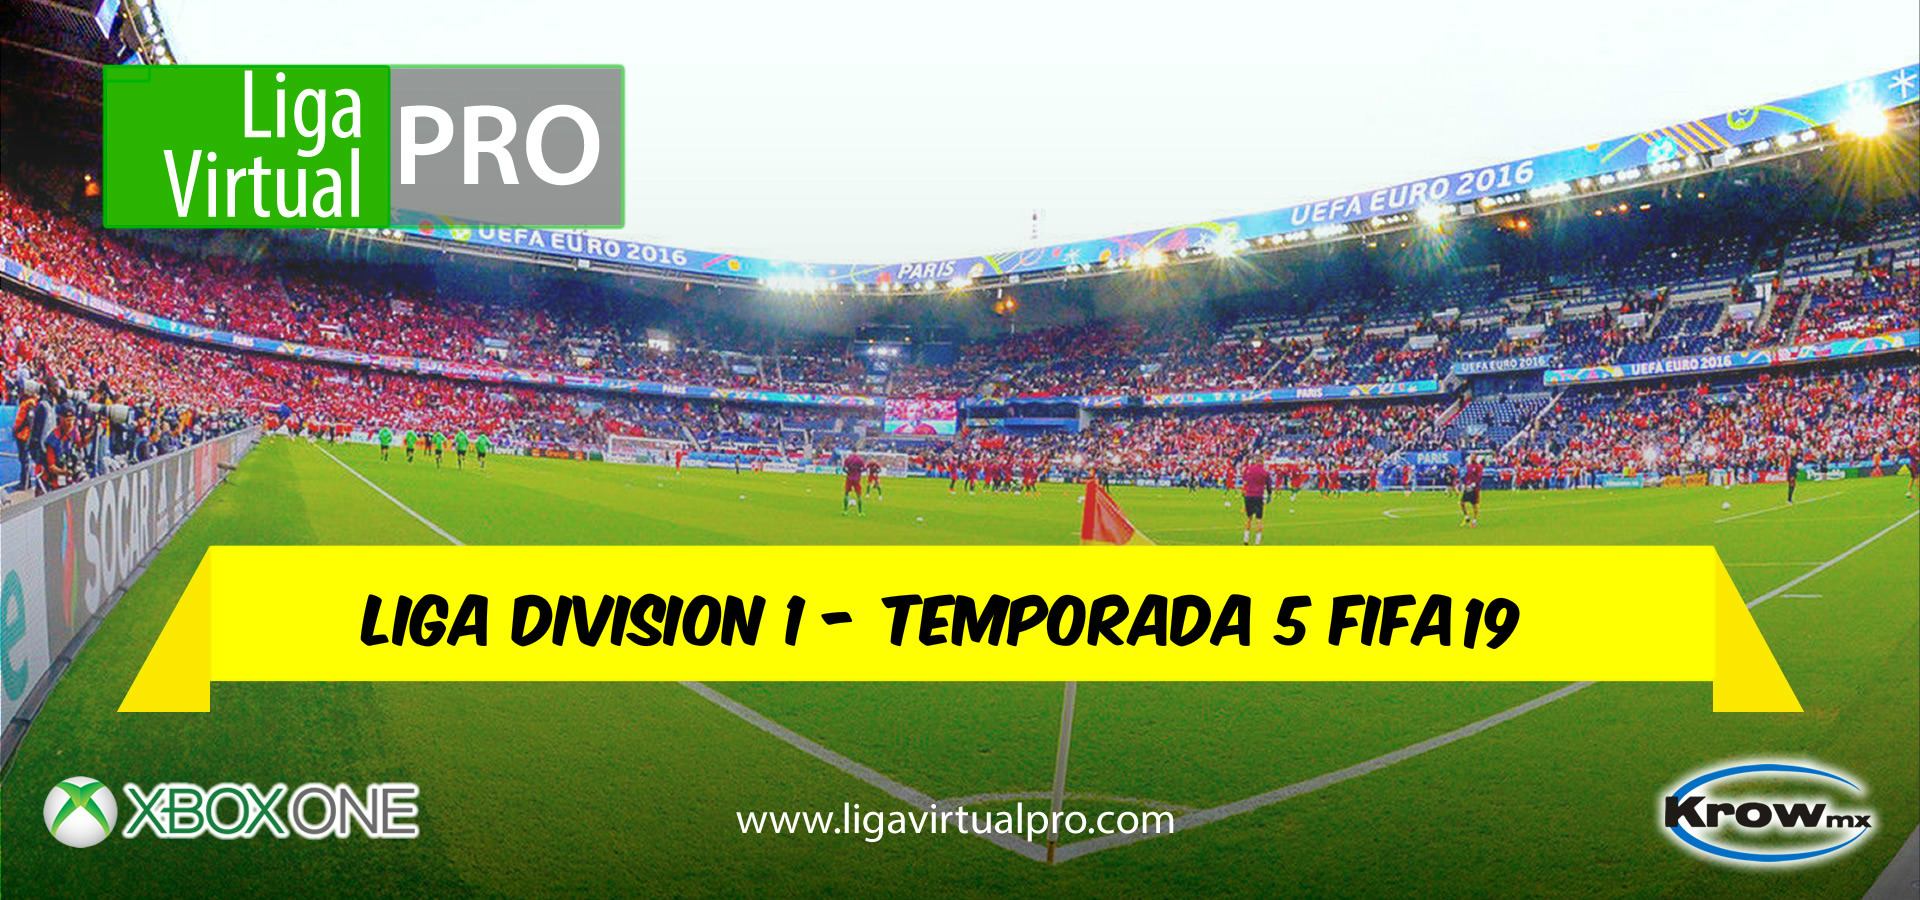 Logo-LIGA DIVISION 1 - TEMPORADA 5 FIFA 19